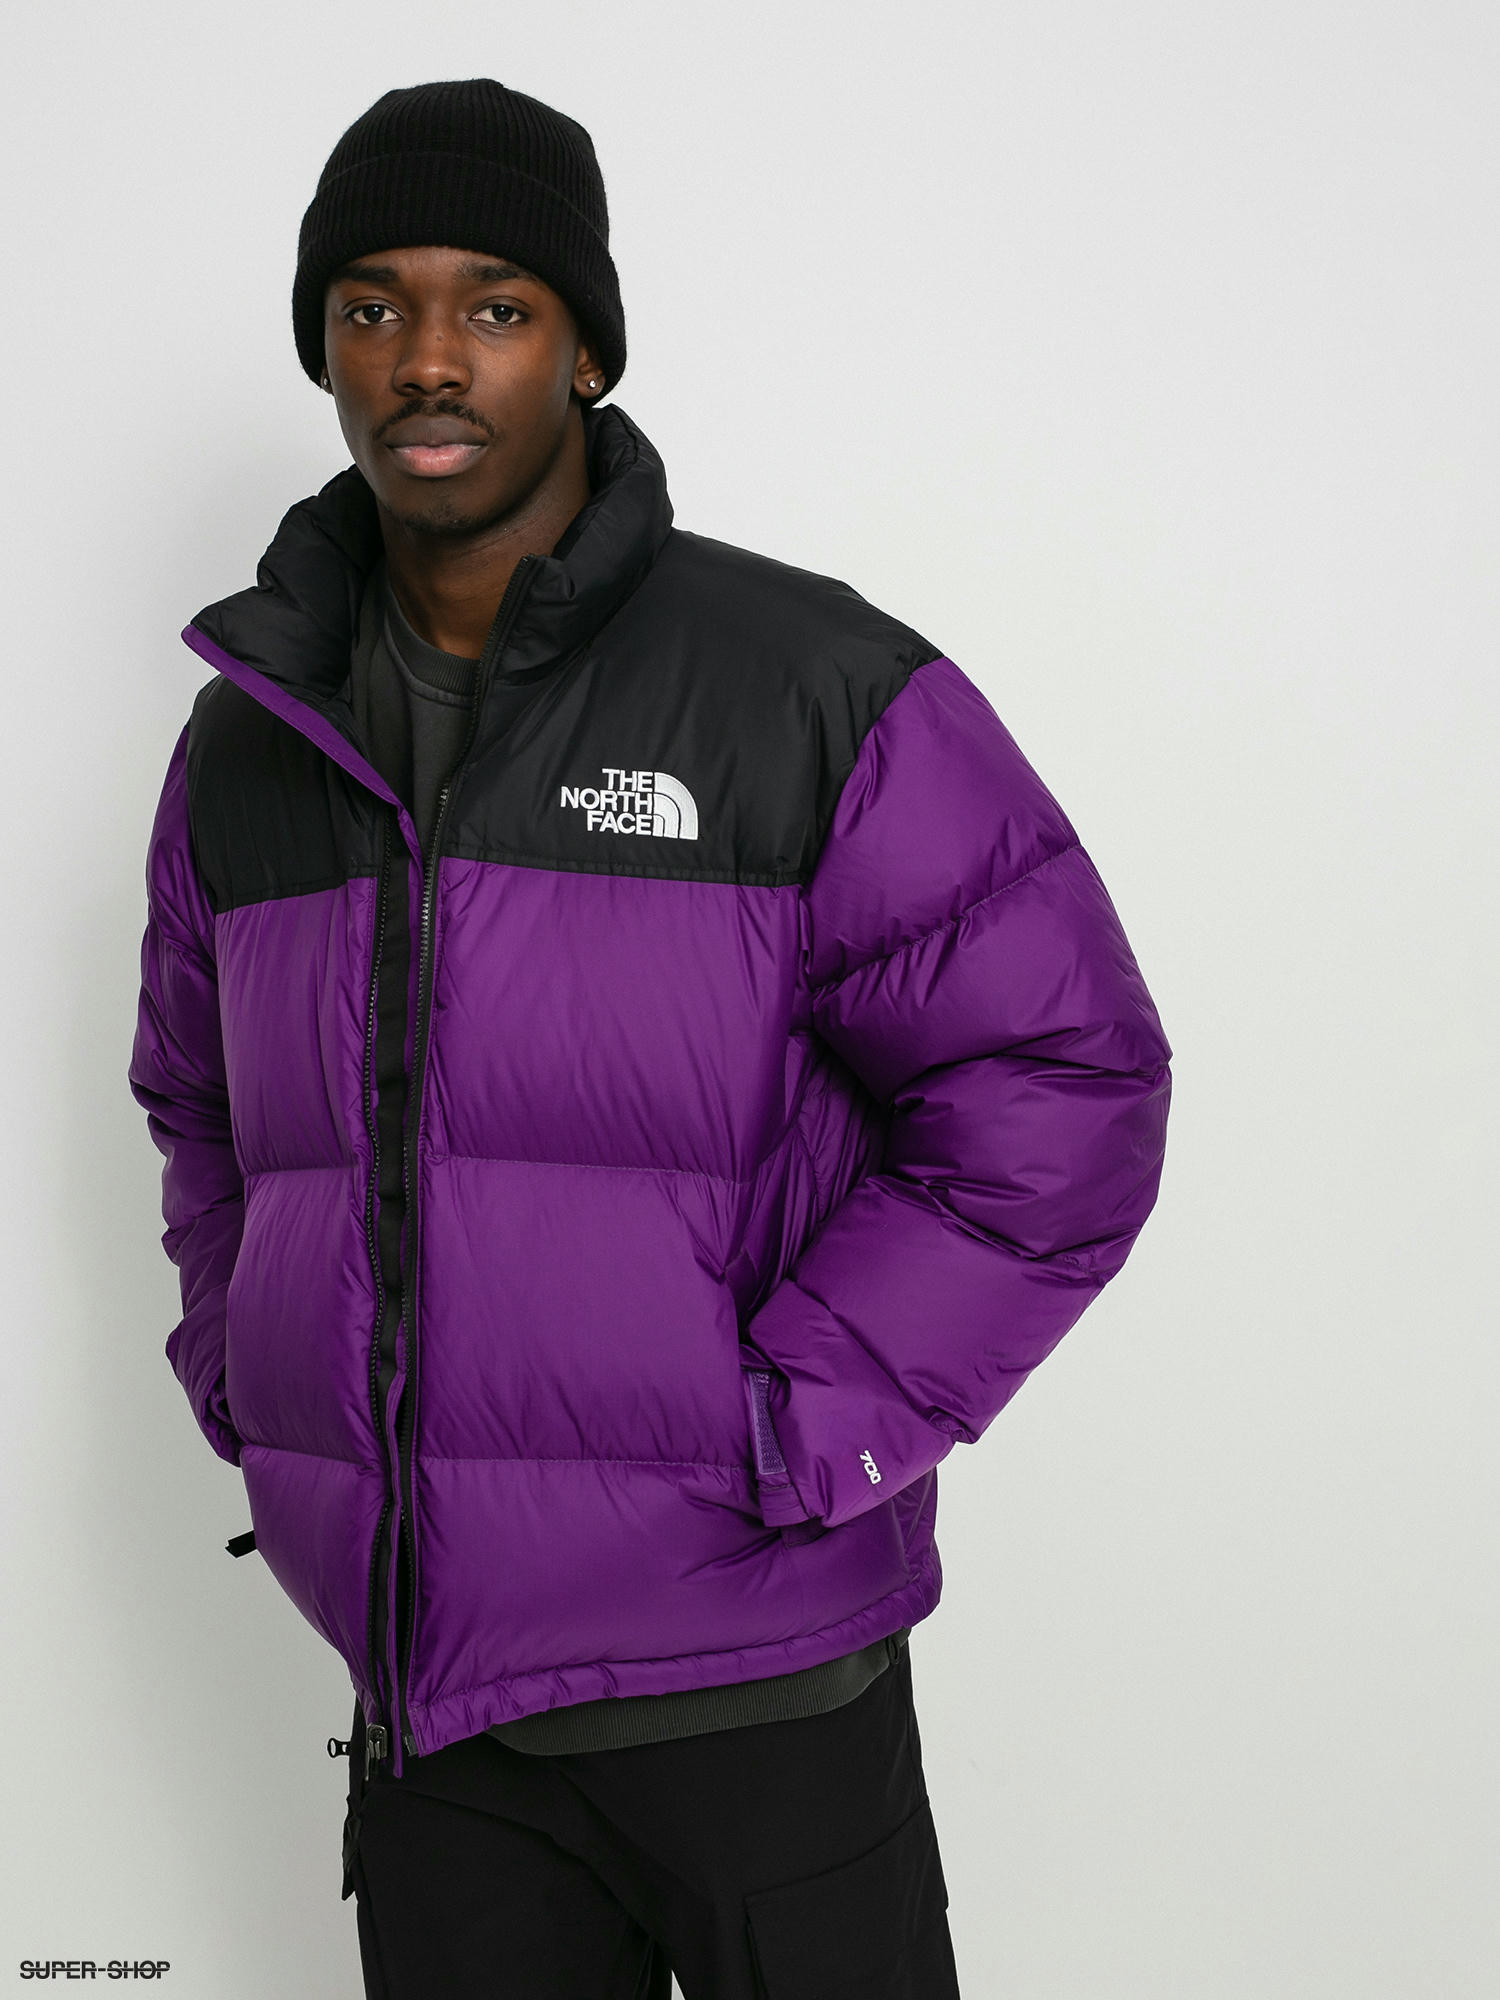 nuptse jacket purple